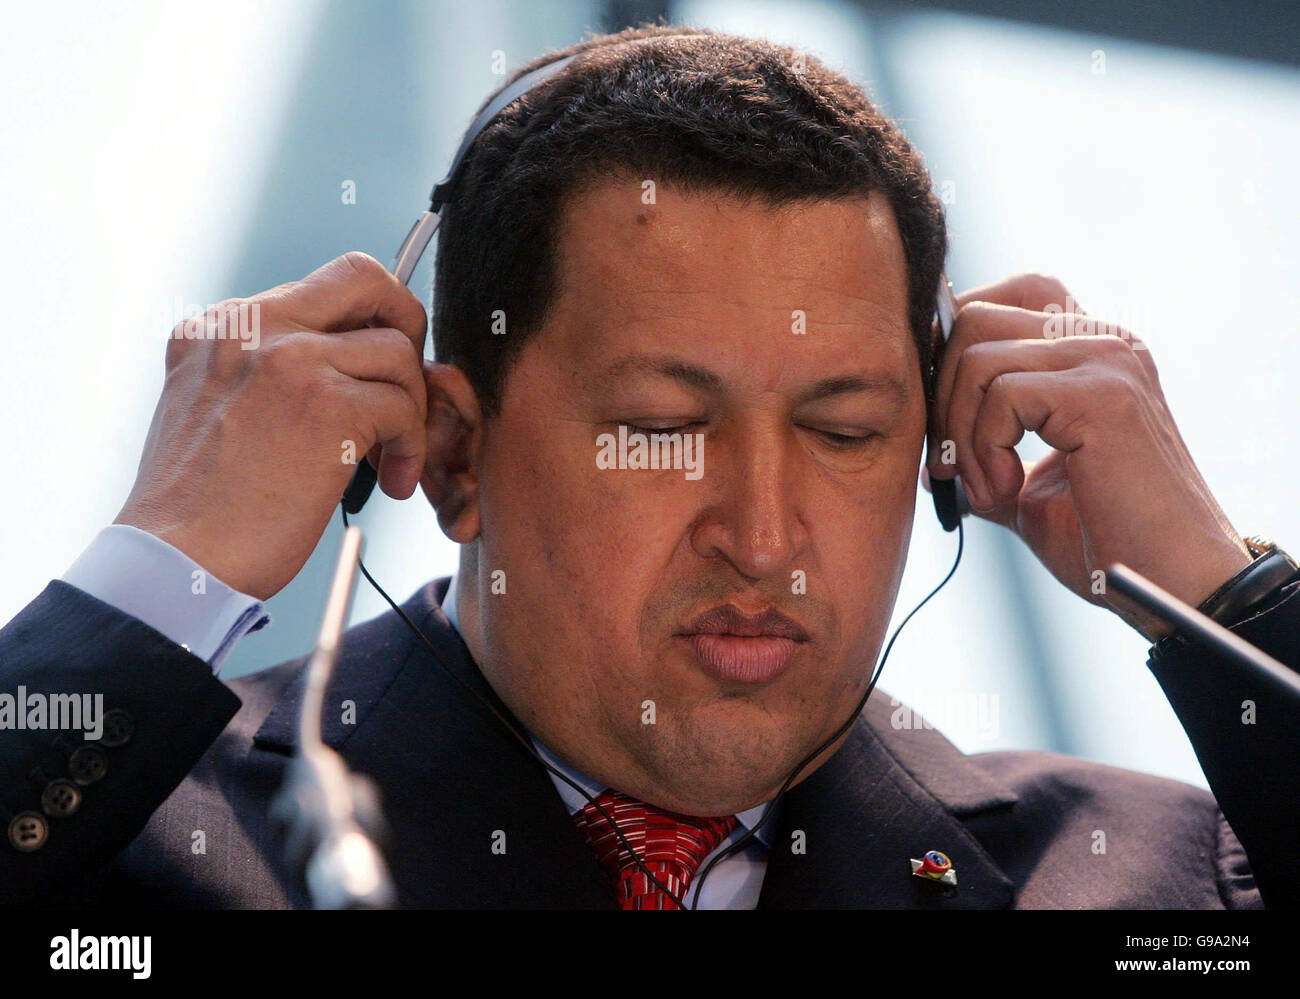 Präsident Venezuelas Hugo Chavez bei einer Pressekonferenz im GLA-Gebäude in London. Stockfoto